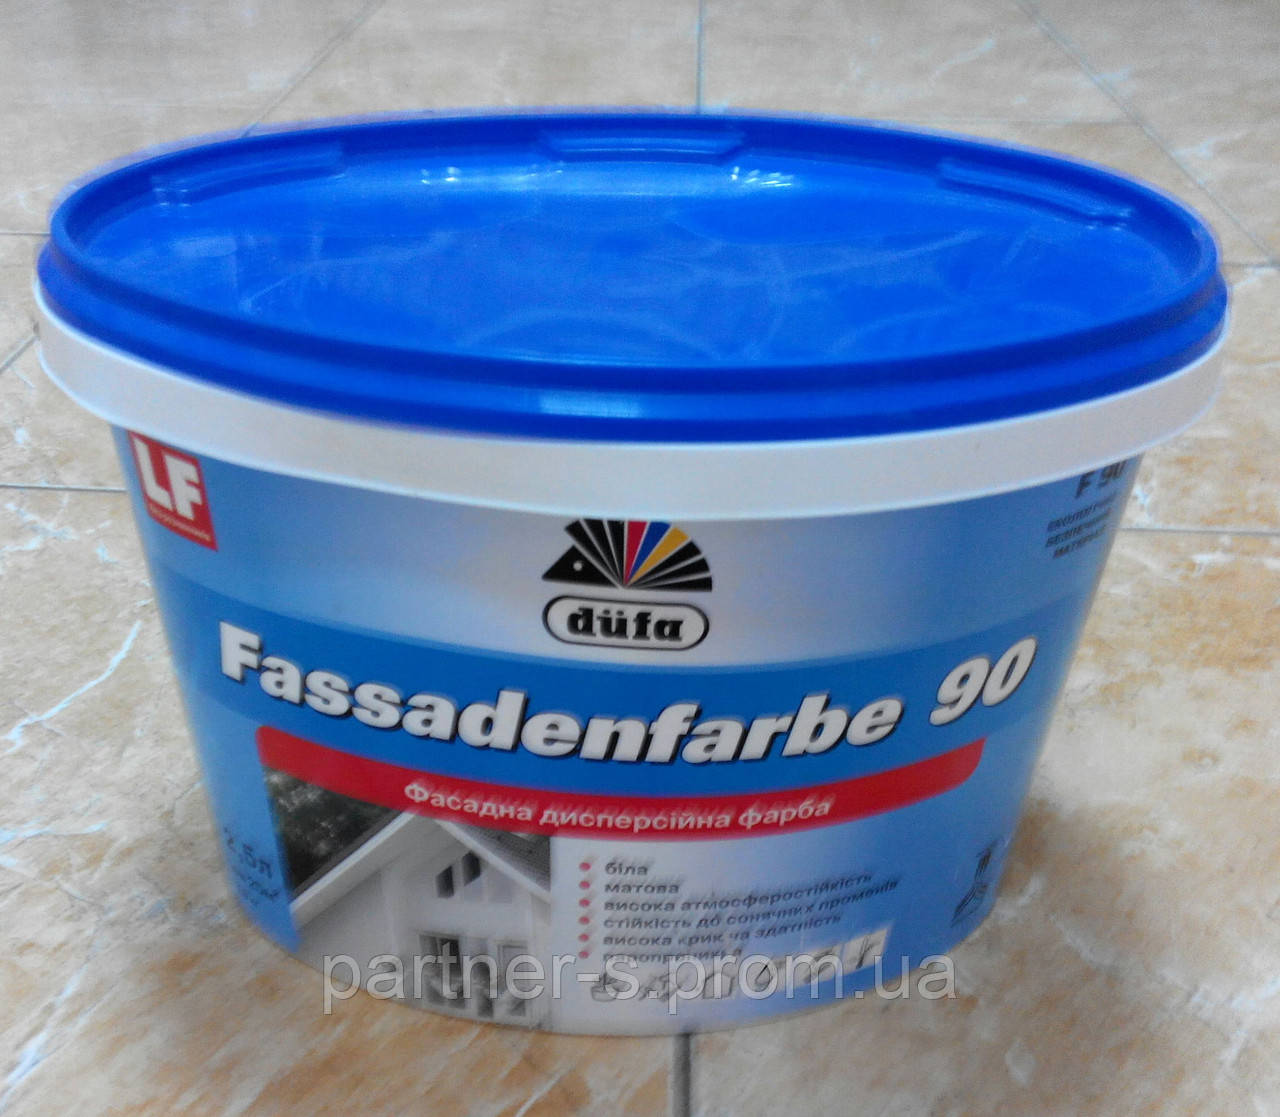 Фасадна дисперсійна фарба для зовнішніх і внутрішніх робіт Fassadenfarbe F 90 Dufa (5 л)